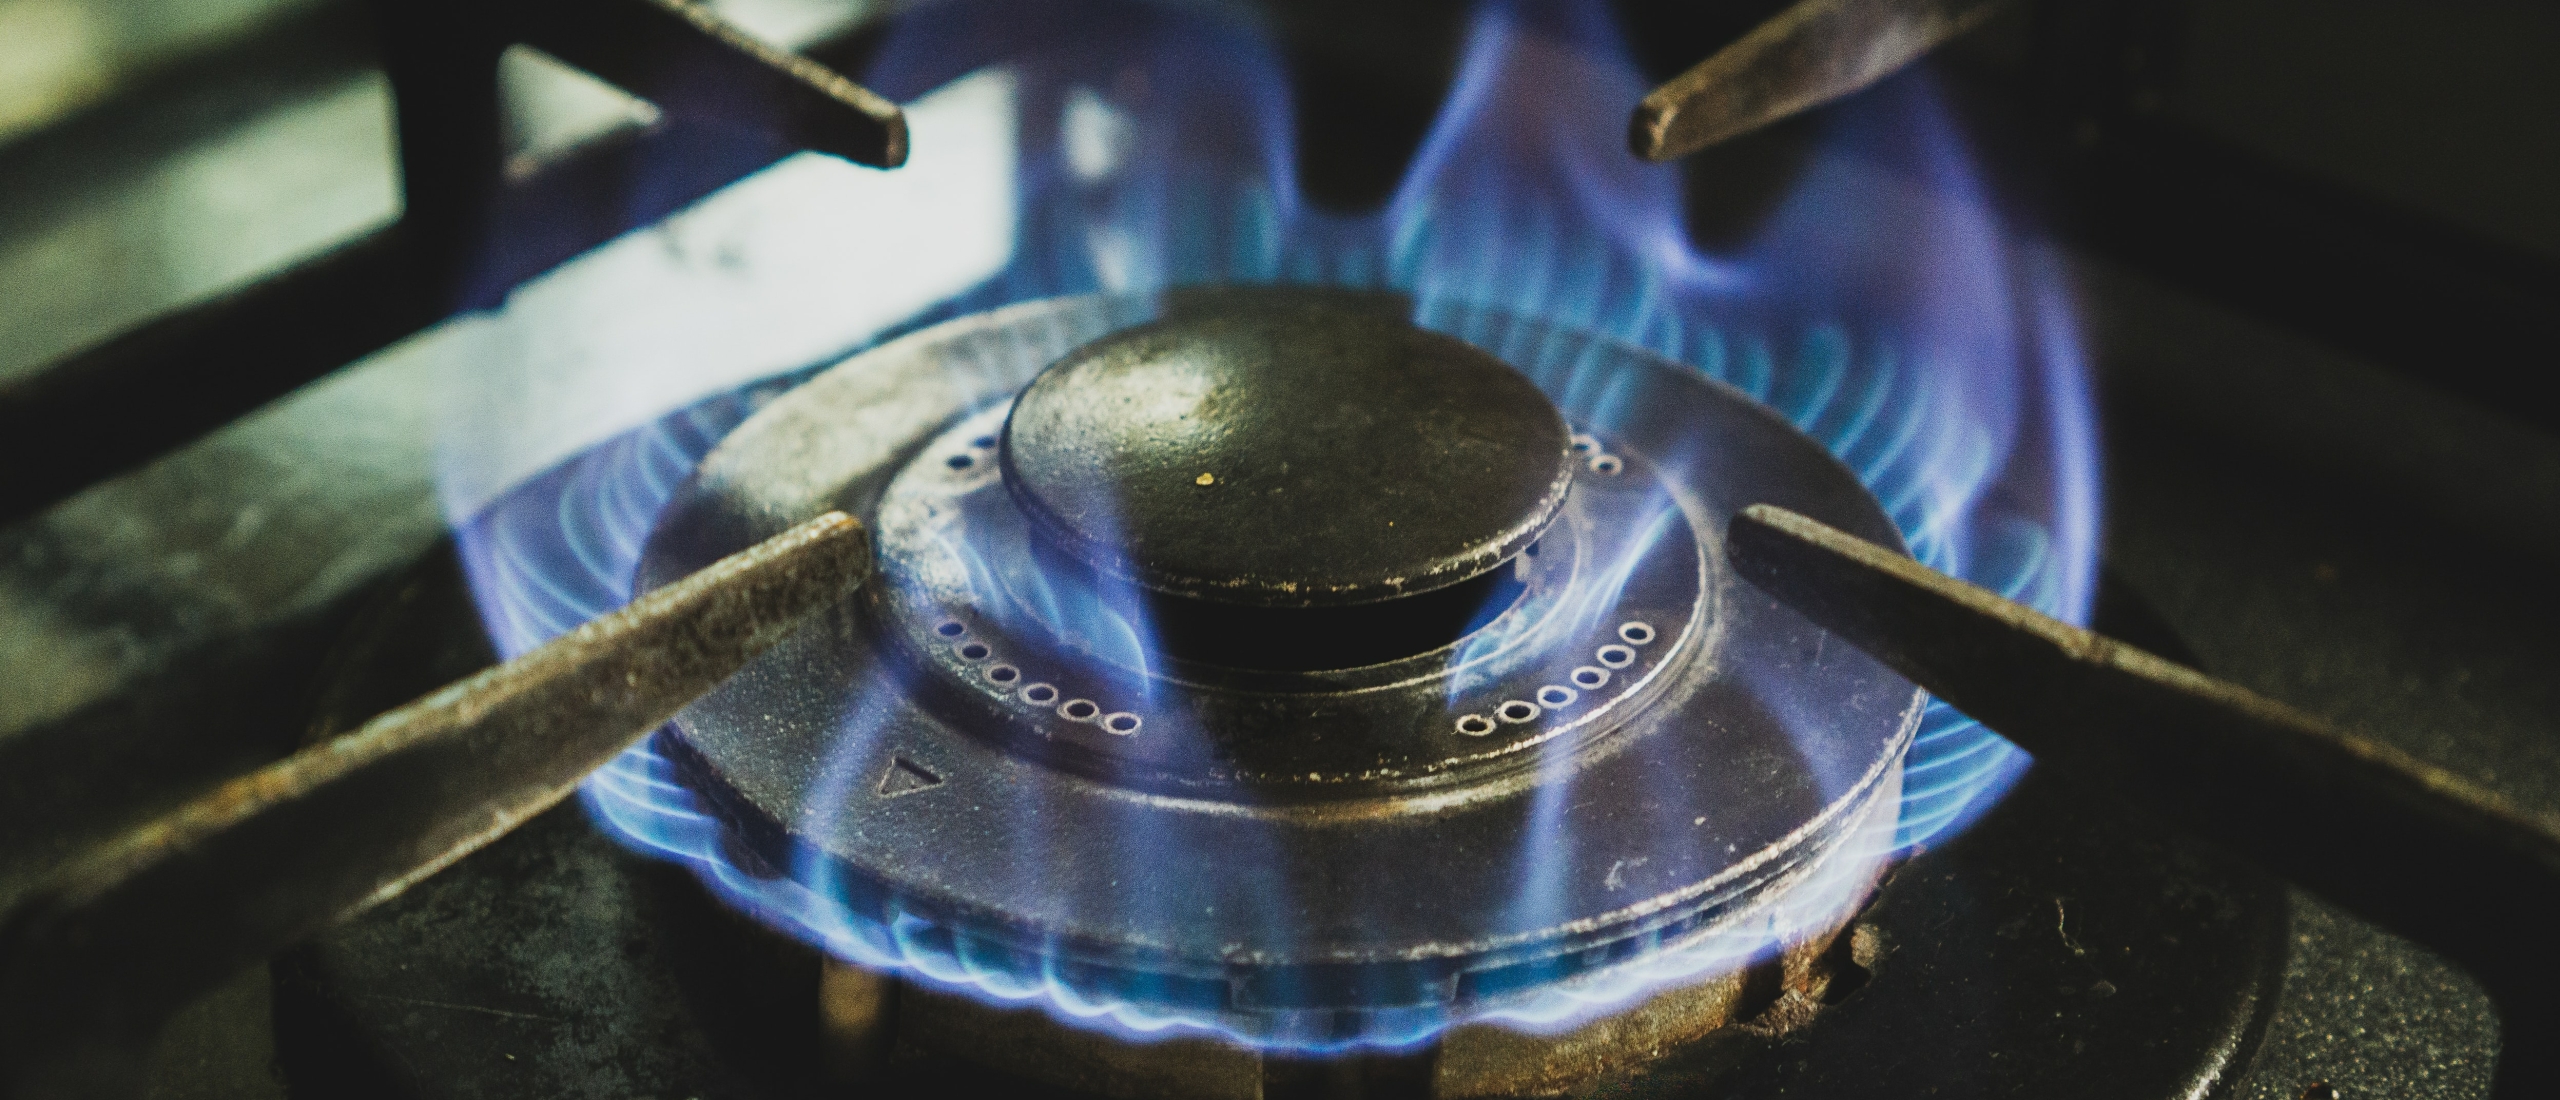 61 tips om gas te besparen